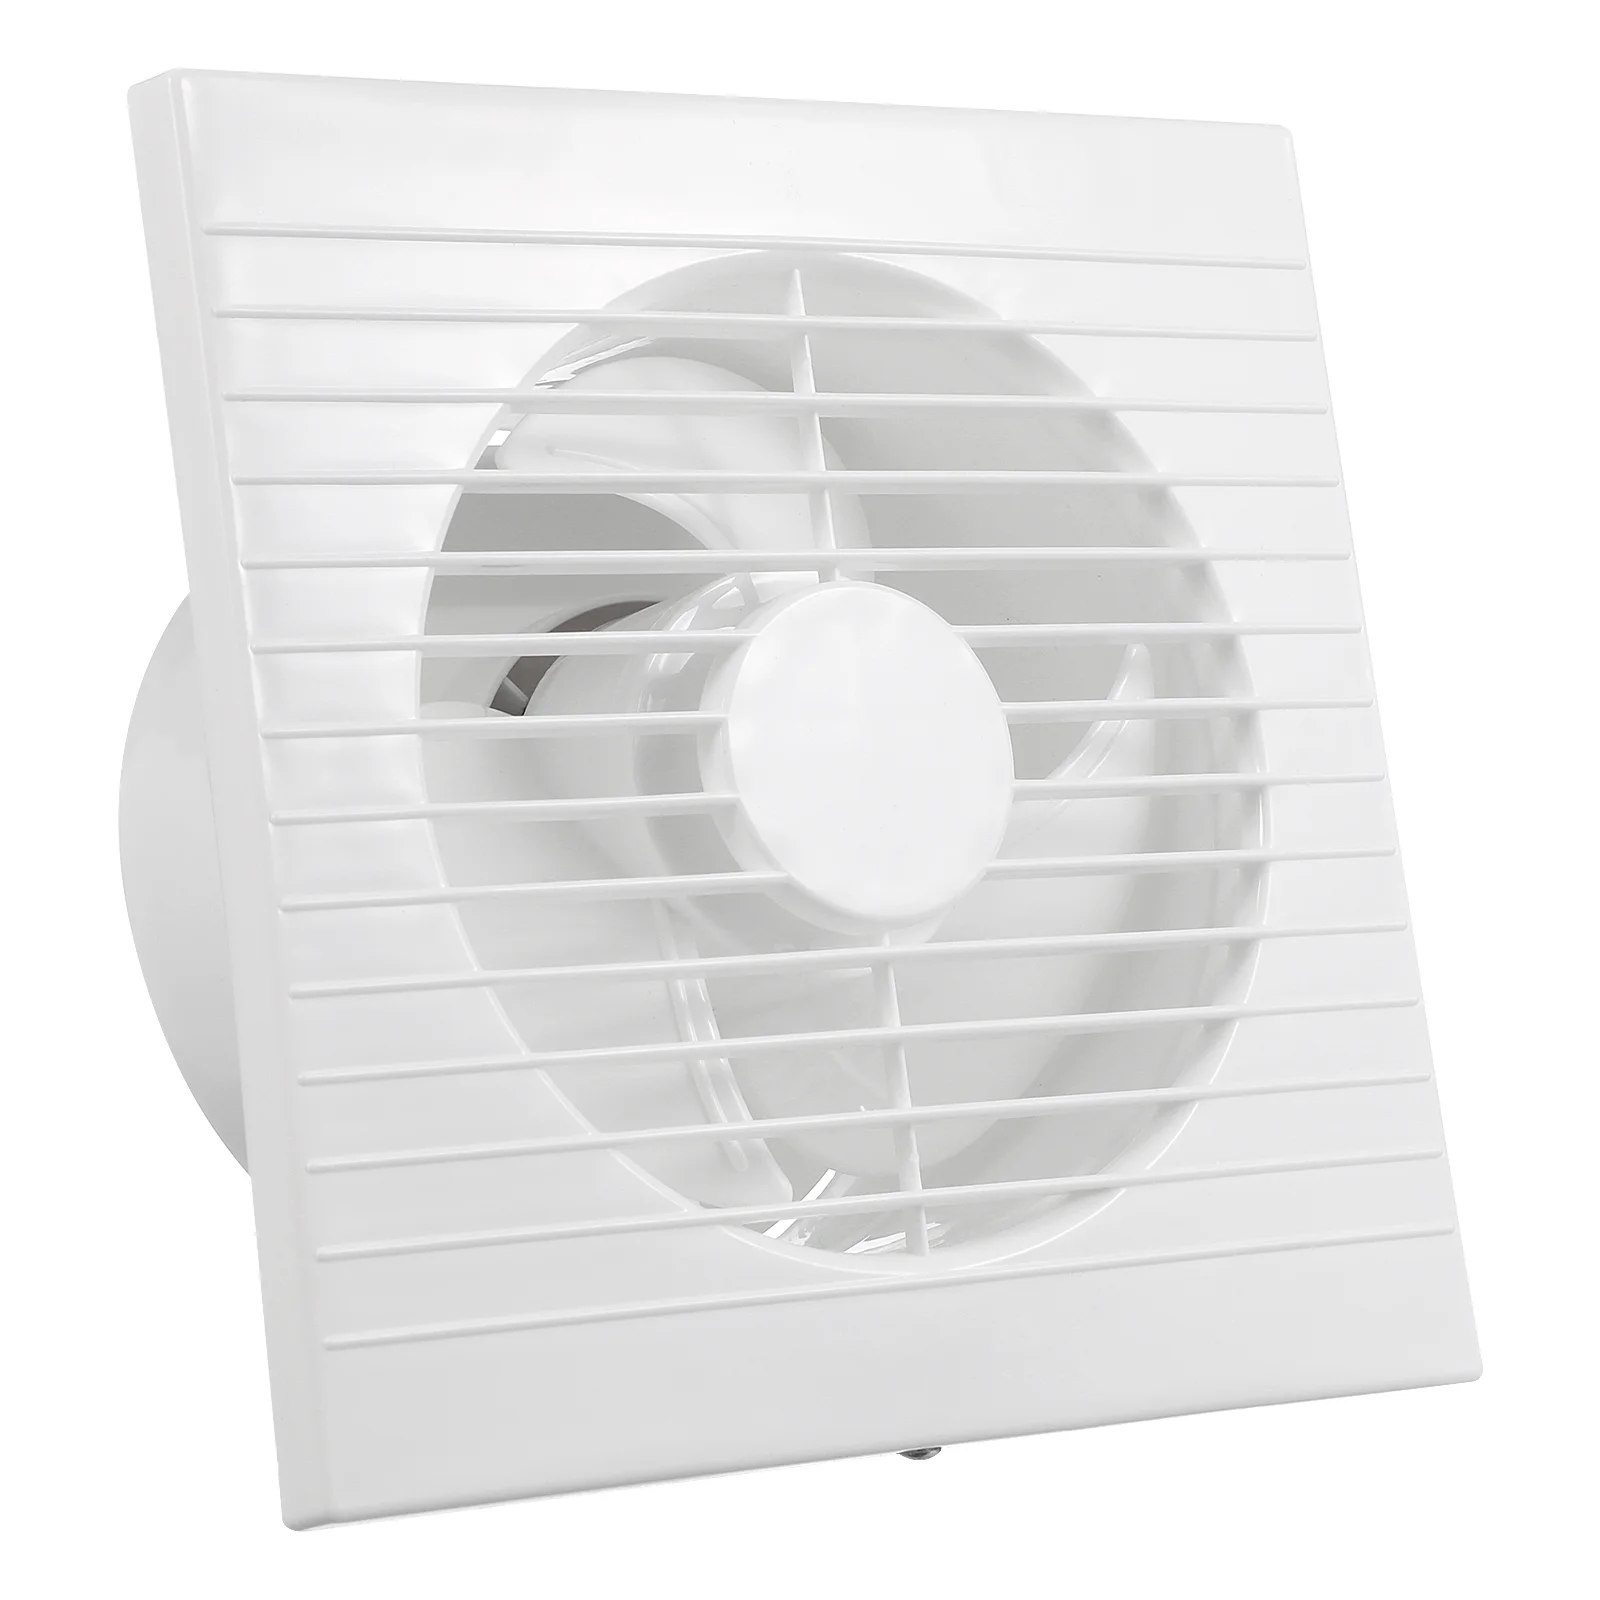 Настенный вытяжной вентилятор 110 В, вытяжной вентилятор для ванной, кухни, туалета, вентиляции, окна, настенный вытяжной вентилятор с вилкой Стандарта США